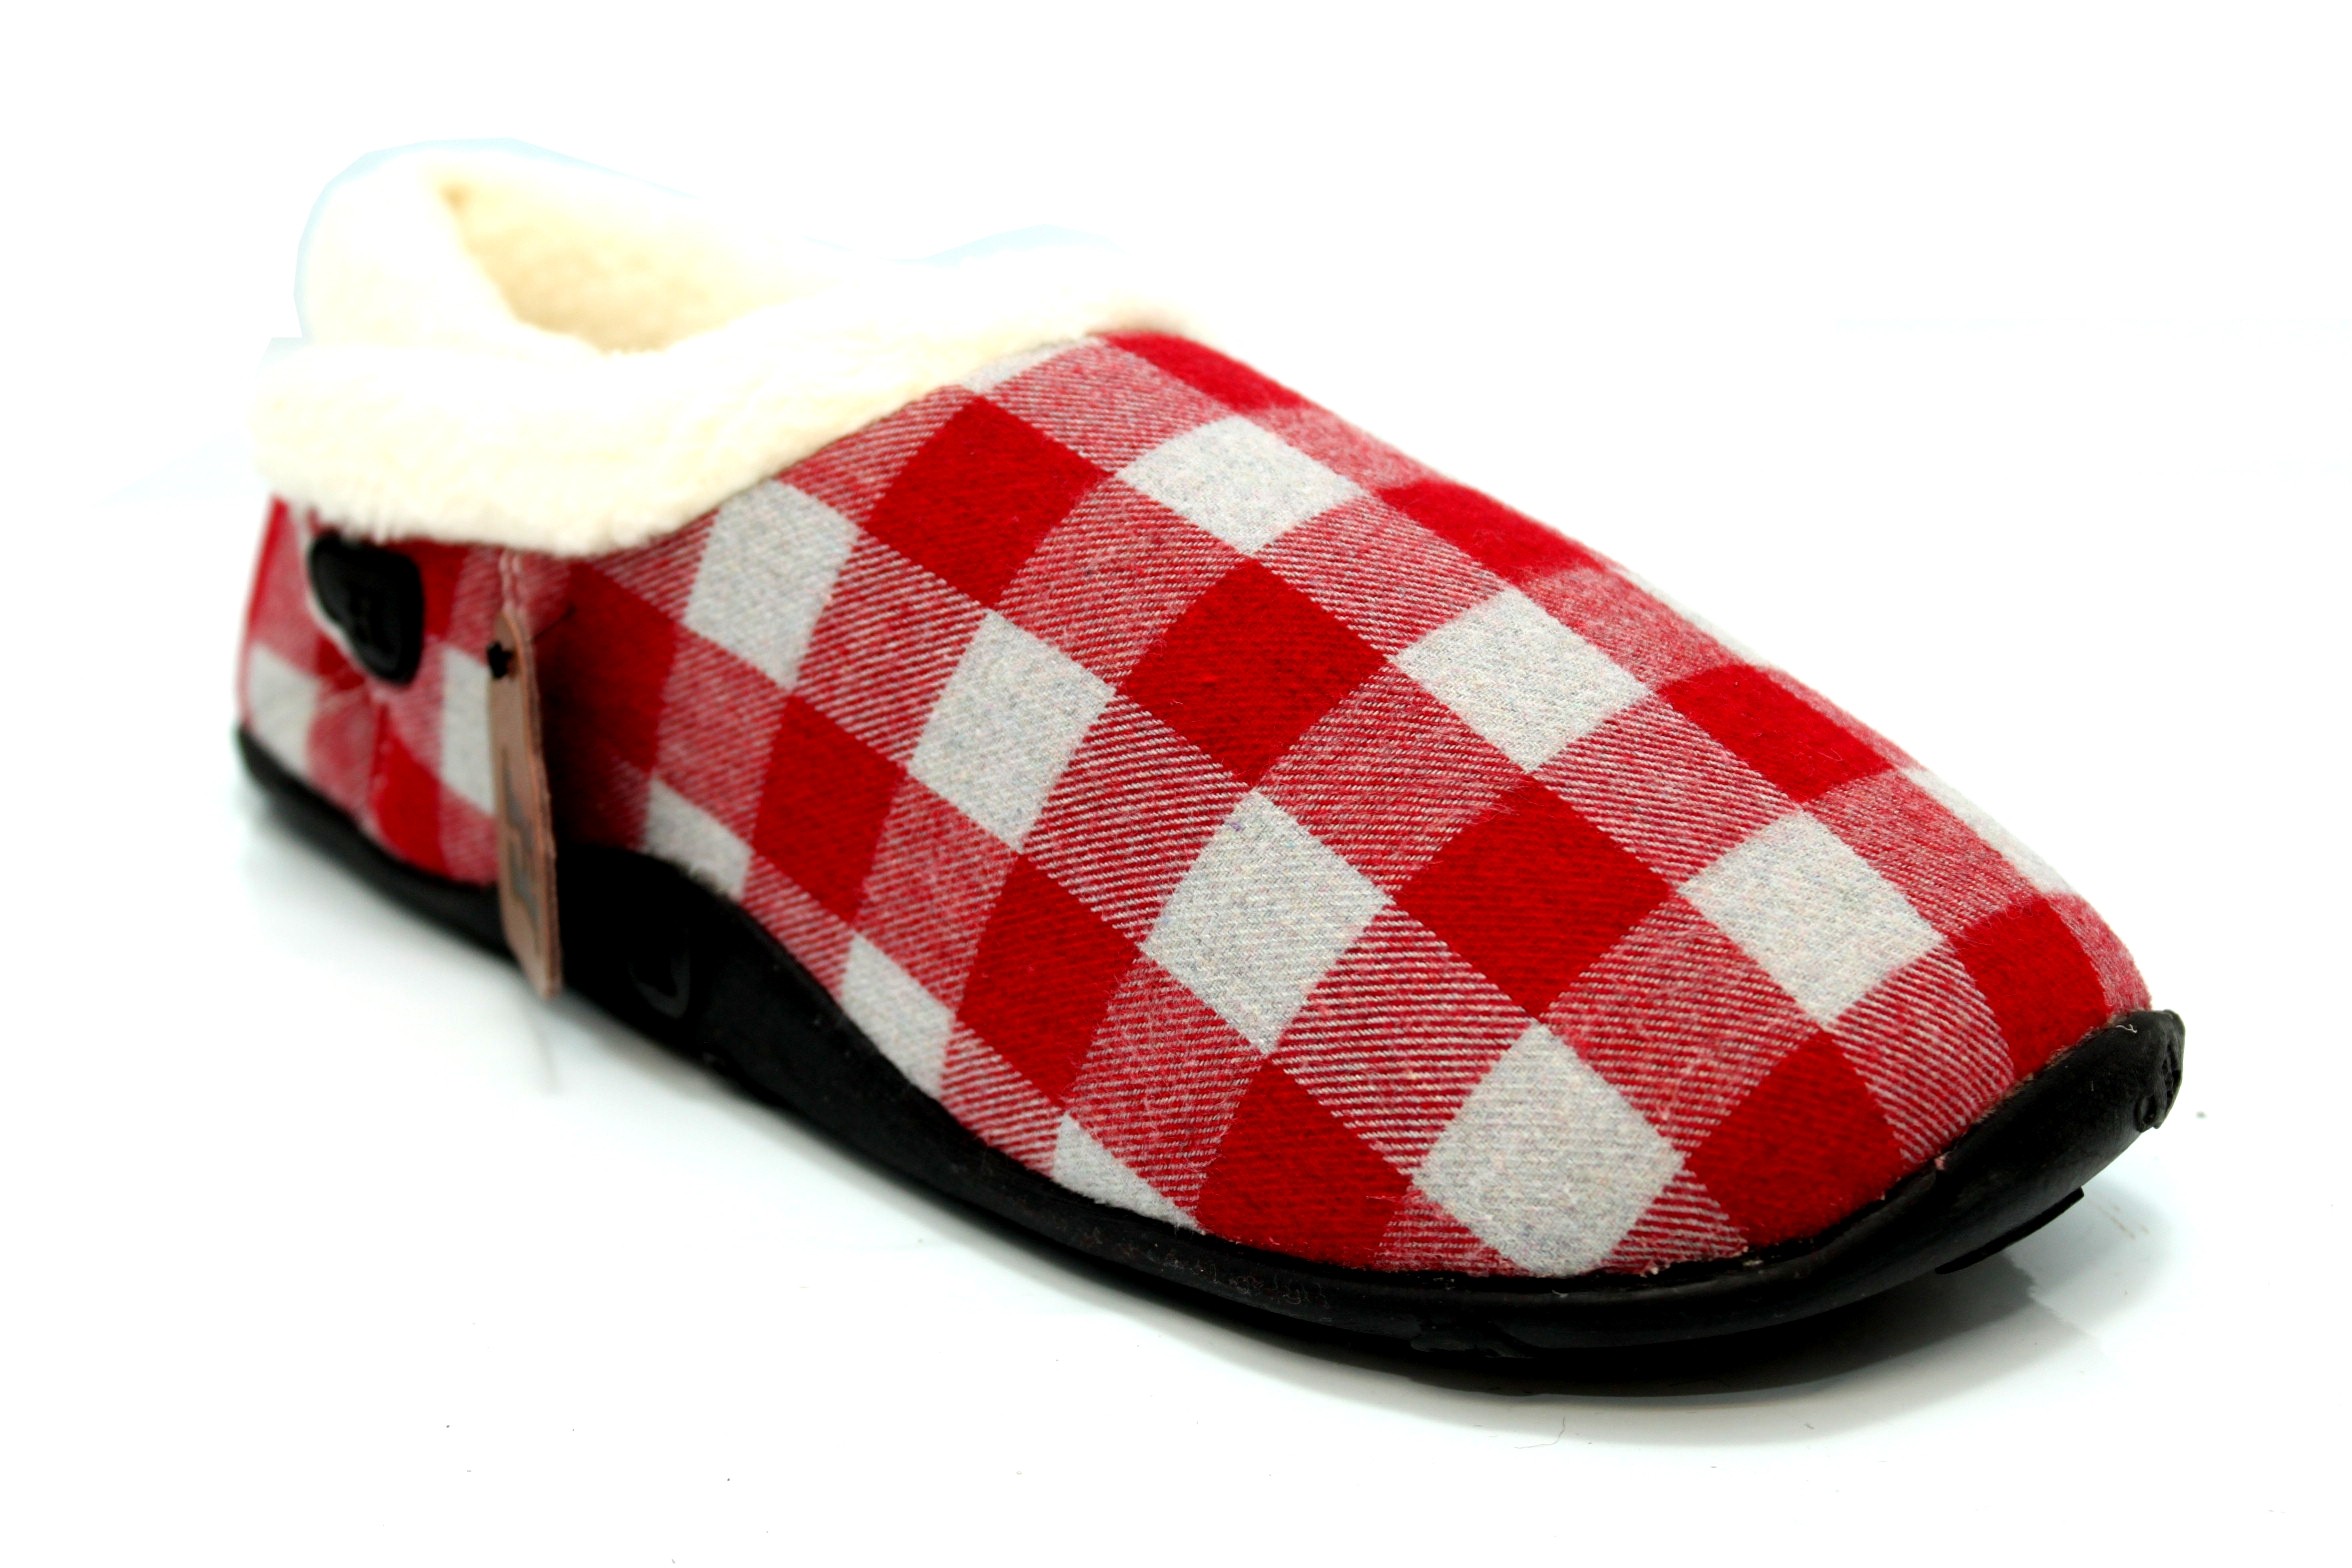 homeys mens slippers